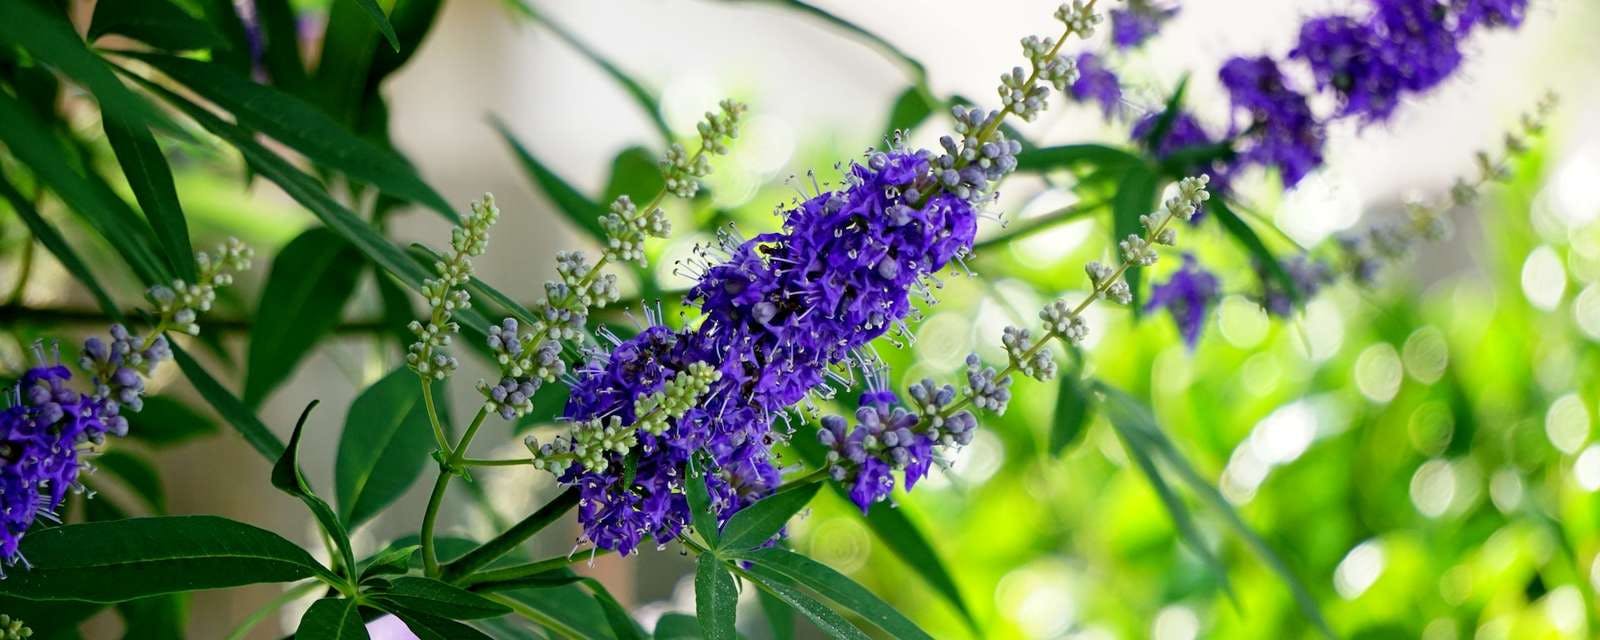 Mönchspfefferpflanze mit violetten Blüten Closeup